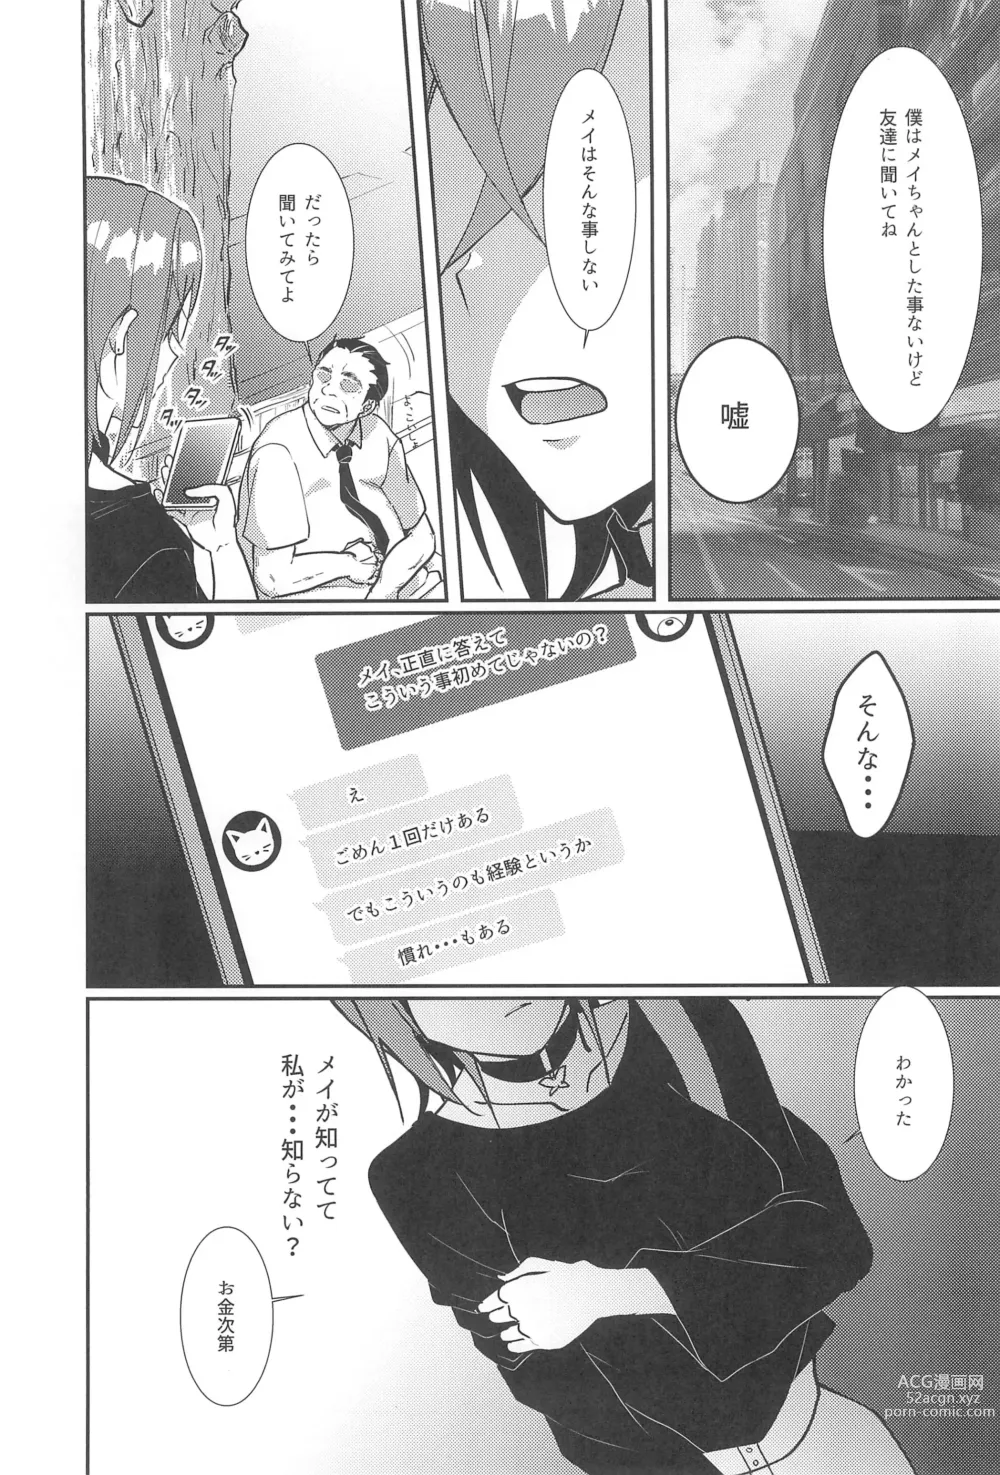 Page 7 of doujinshi Wakana Shiki